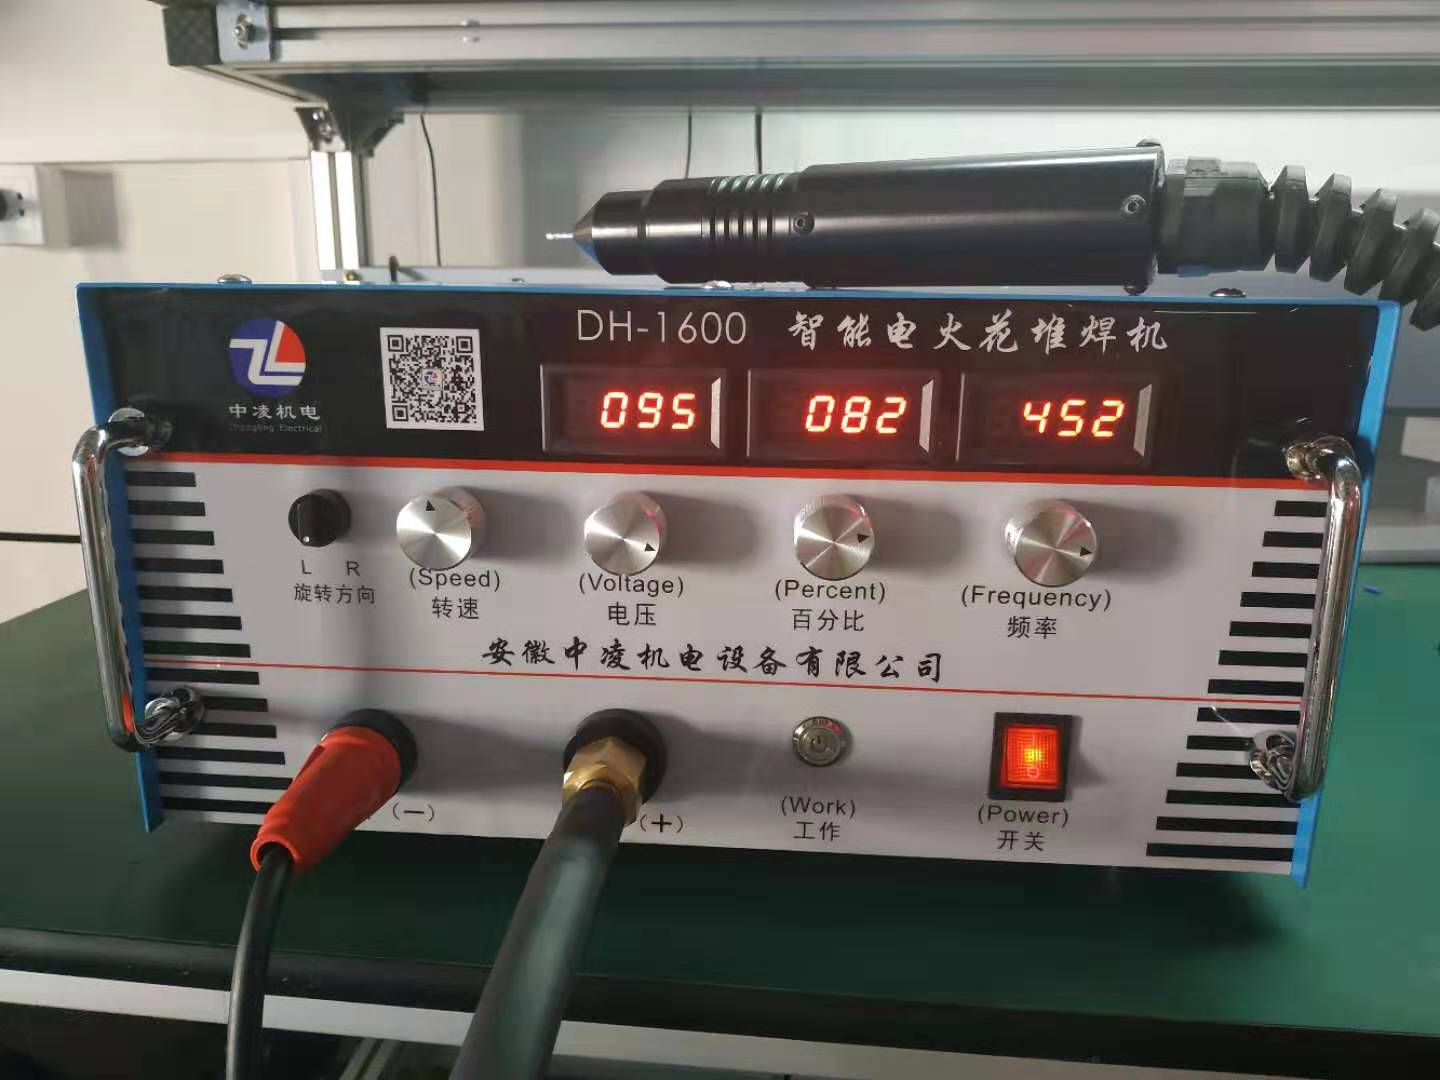 安徽中凌机电DH-1600型电火花修补堆焊冷焊机模具铸造缺陷修补